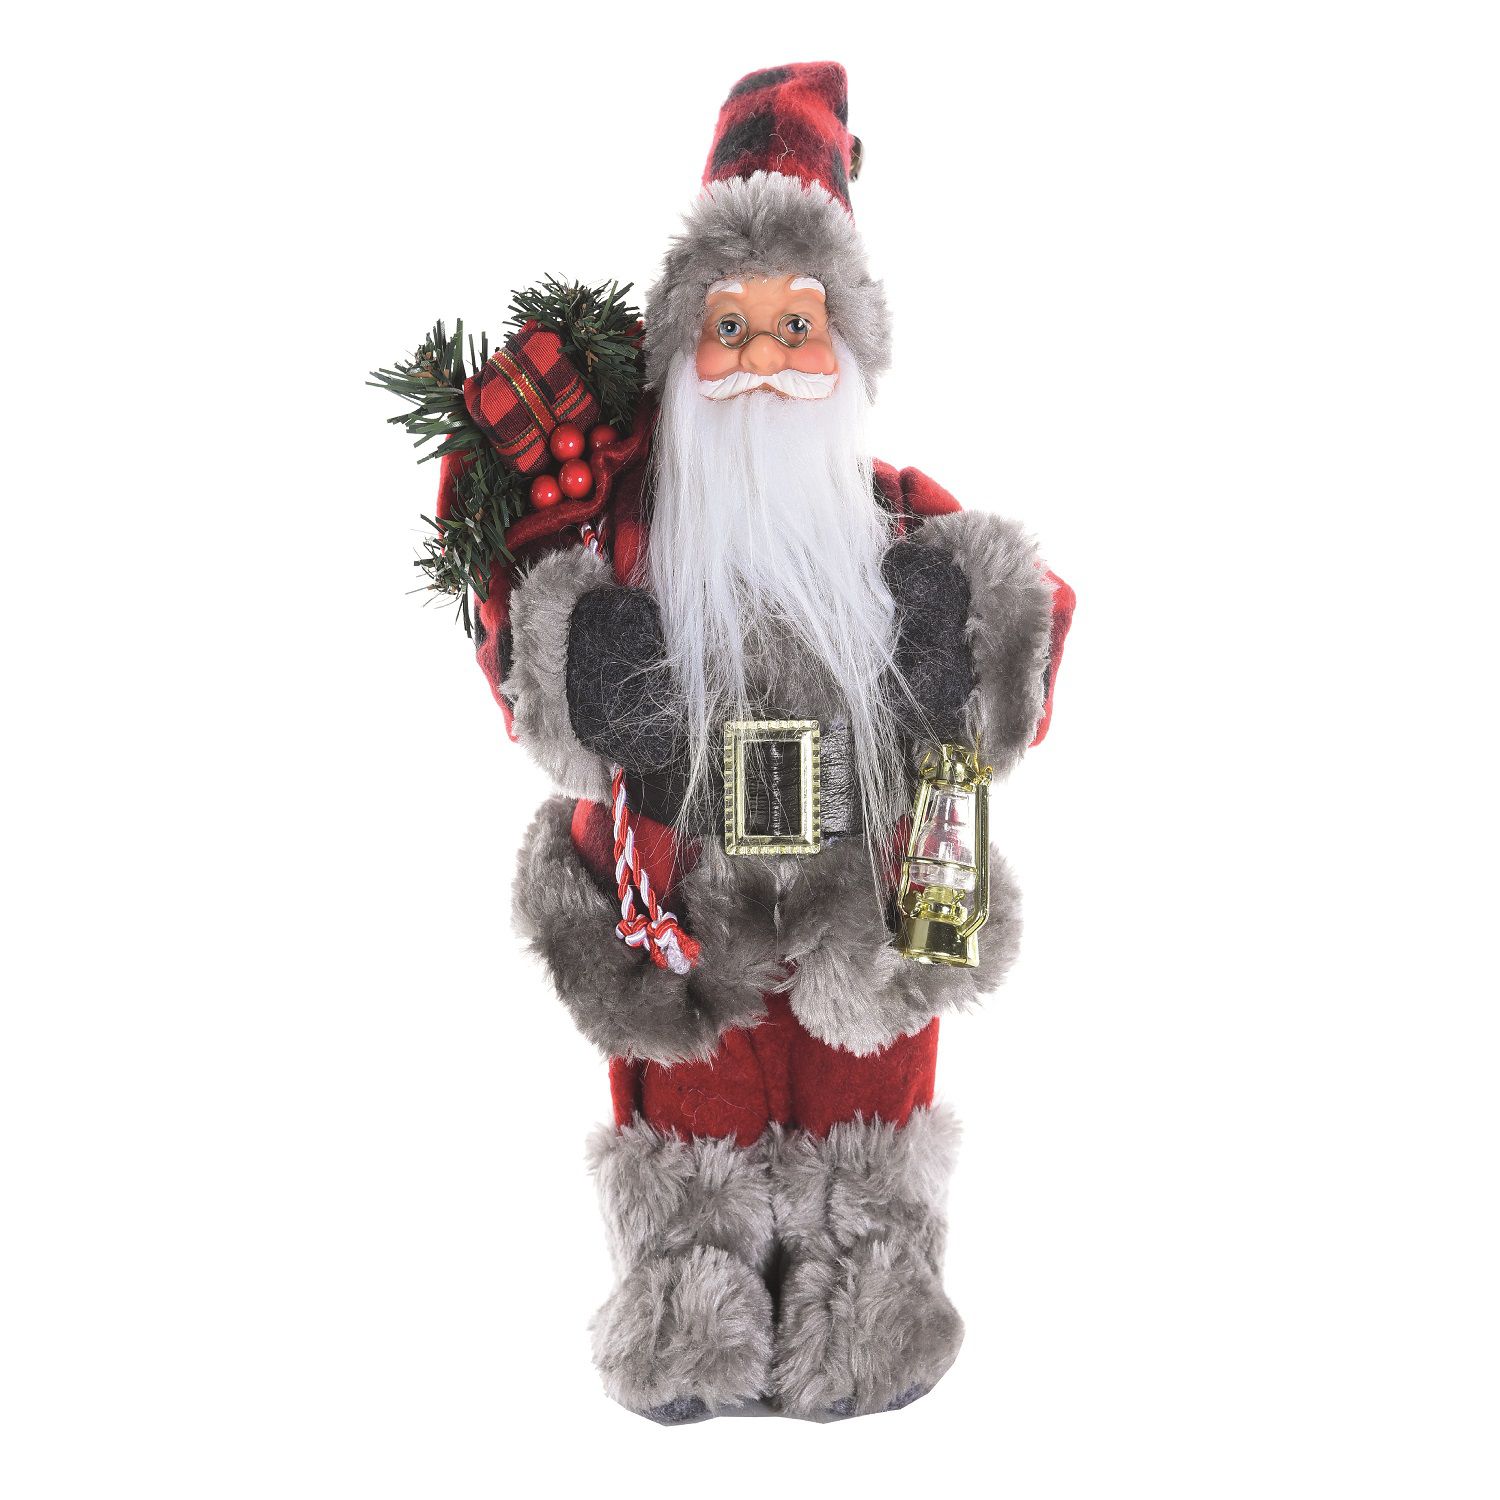 Papai Noel em Pé com Roupa Vermelha e Preta Segurando Lanterna 40cm -  Coleção Noeis - Ref 1113446 Cromus - CCS Decorações